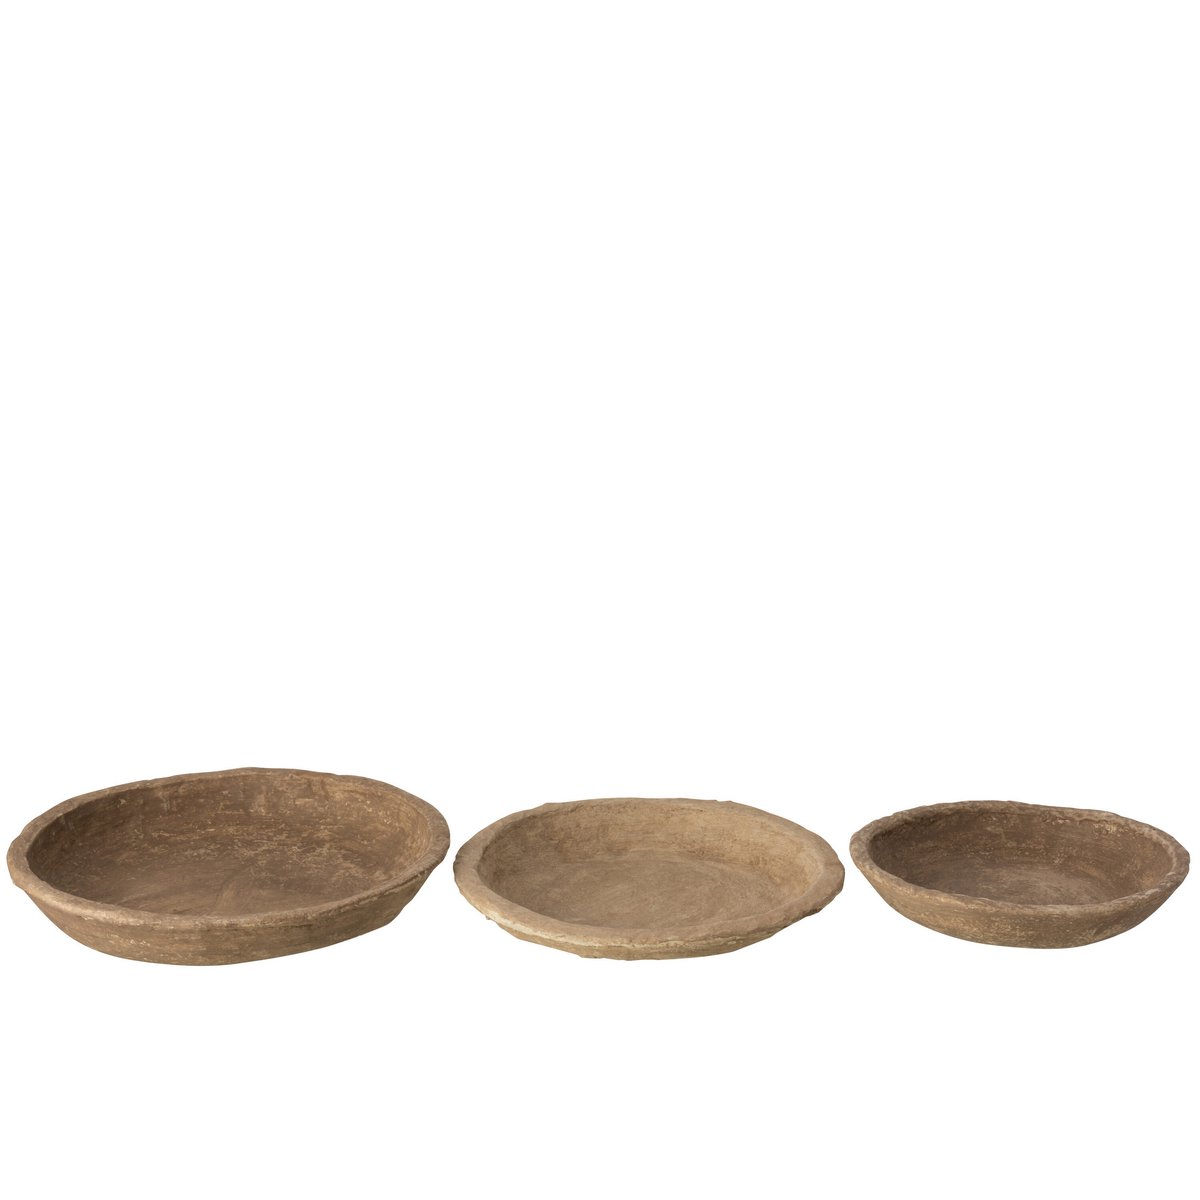 Set of 3 decor bowls, papier-mâché - brown